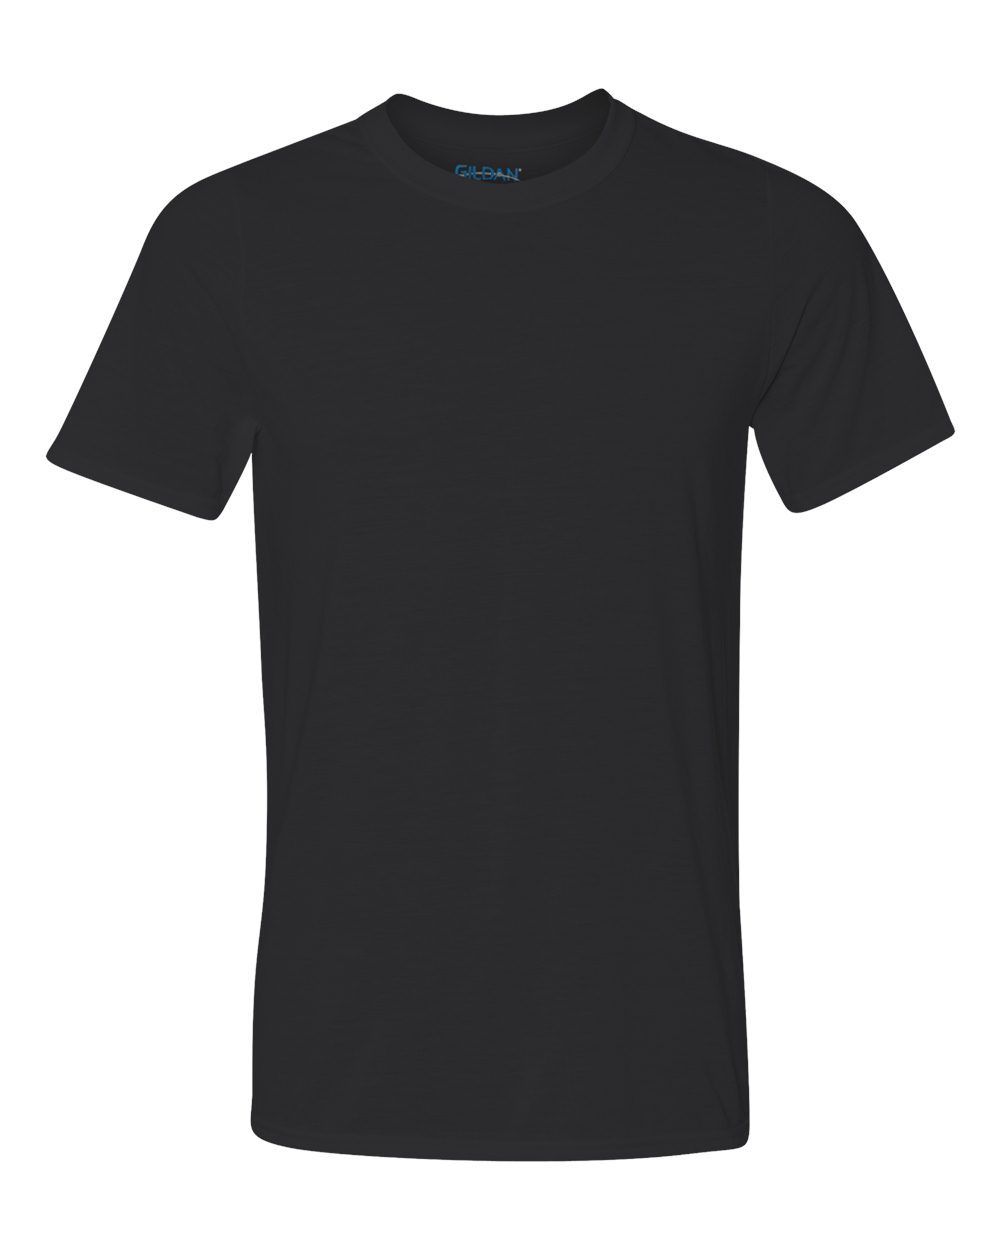 Gildan Dri-Fit Performance | Austin T-Shirt Lab